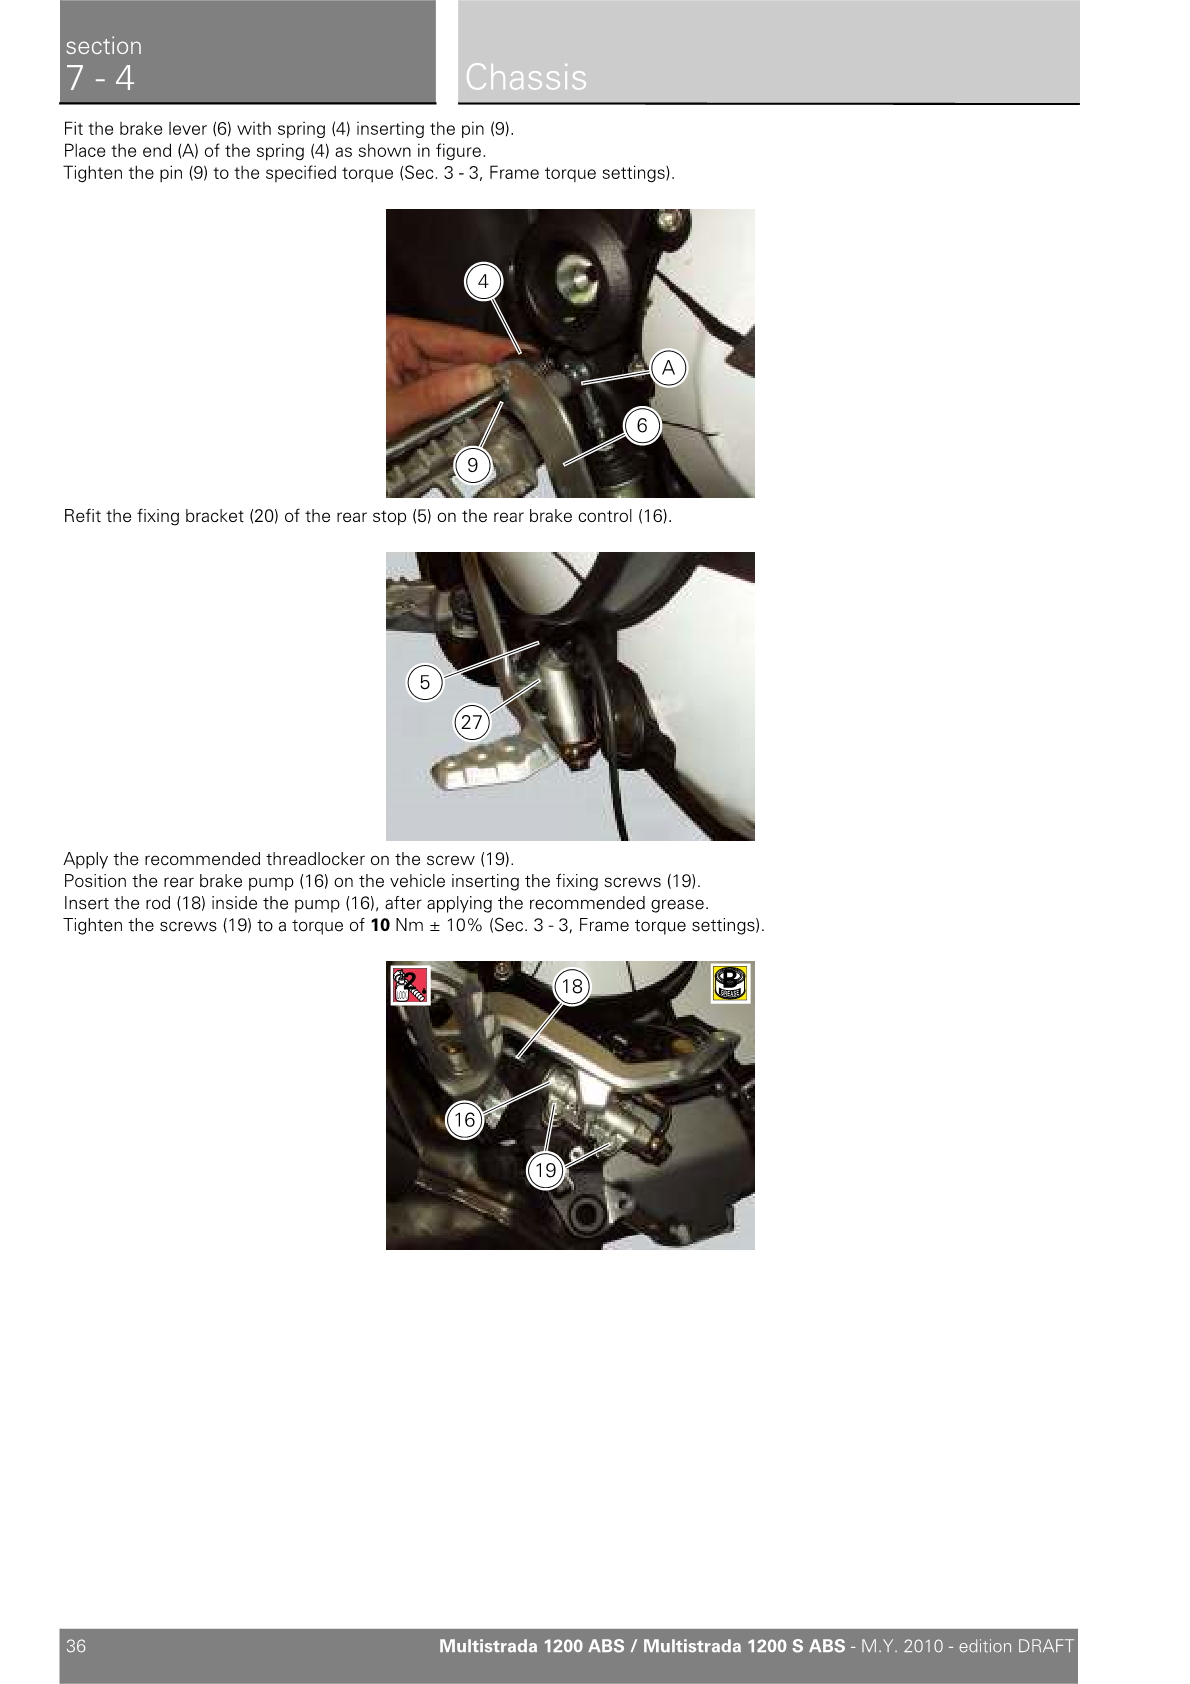 2010-2014 Ducati Multistrada MTS 1200S Twin Manual